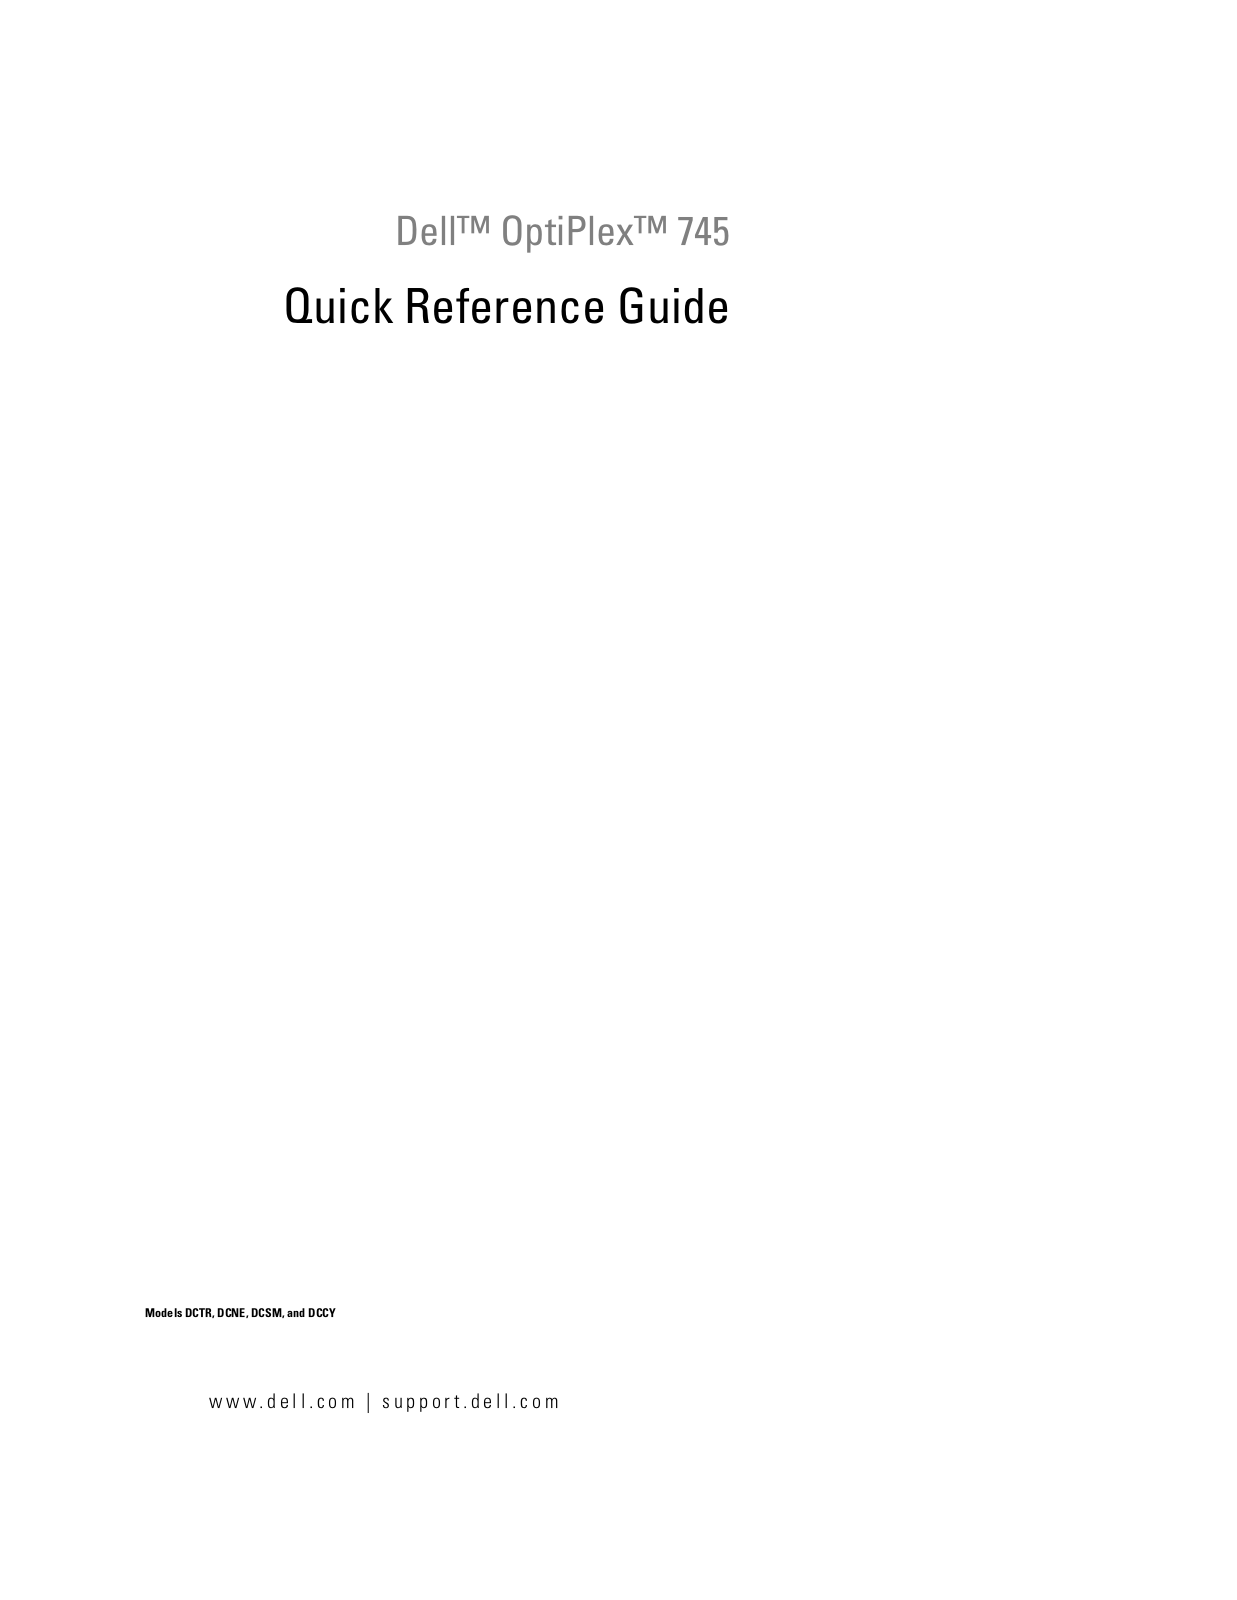 DELL GX745 User Manual